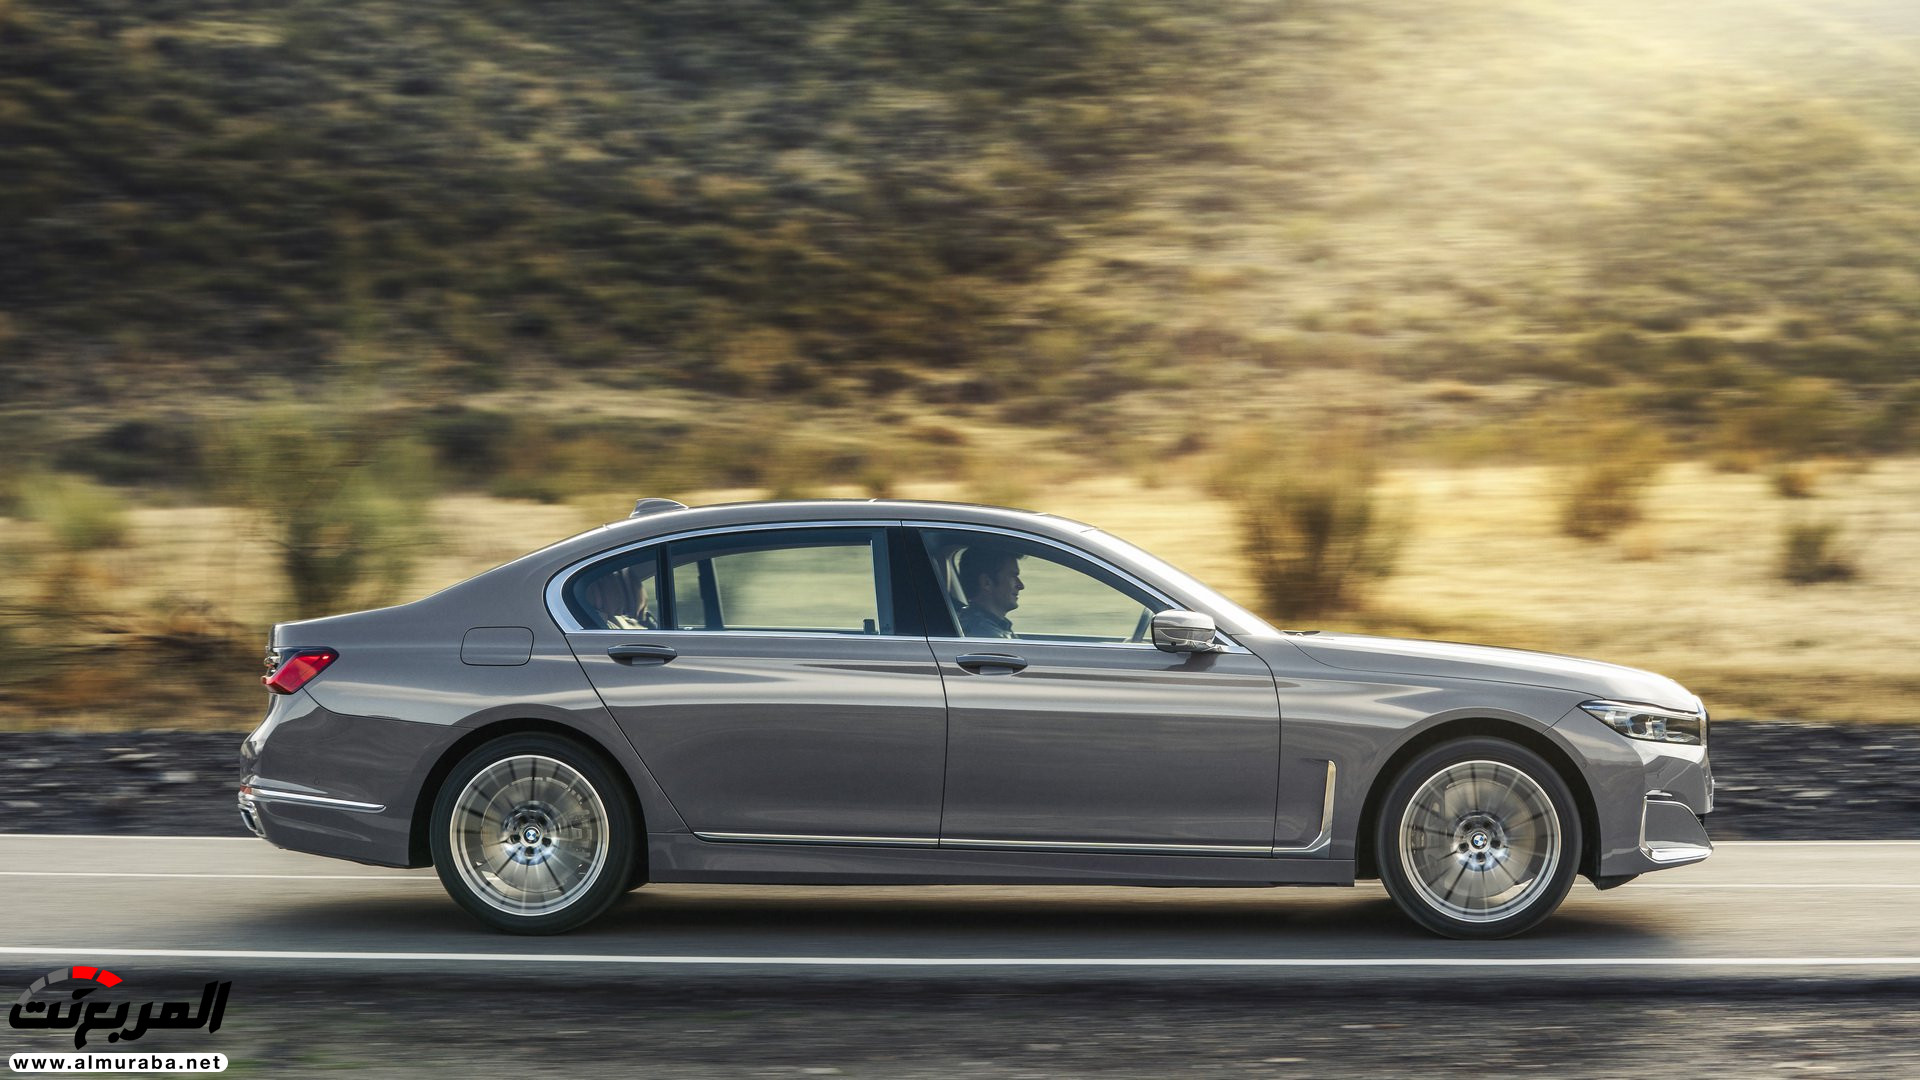 بي ام دبليو الفئة السابعة 2020 المحدثة تكشف نفسها رسمياً "صور ومواصفات" BMW 7 Series 244